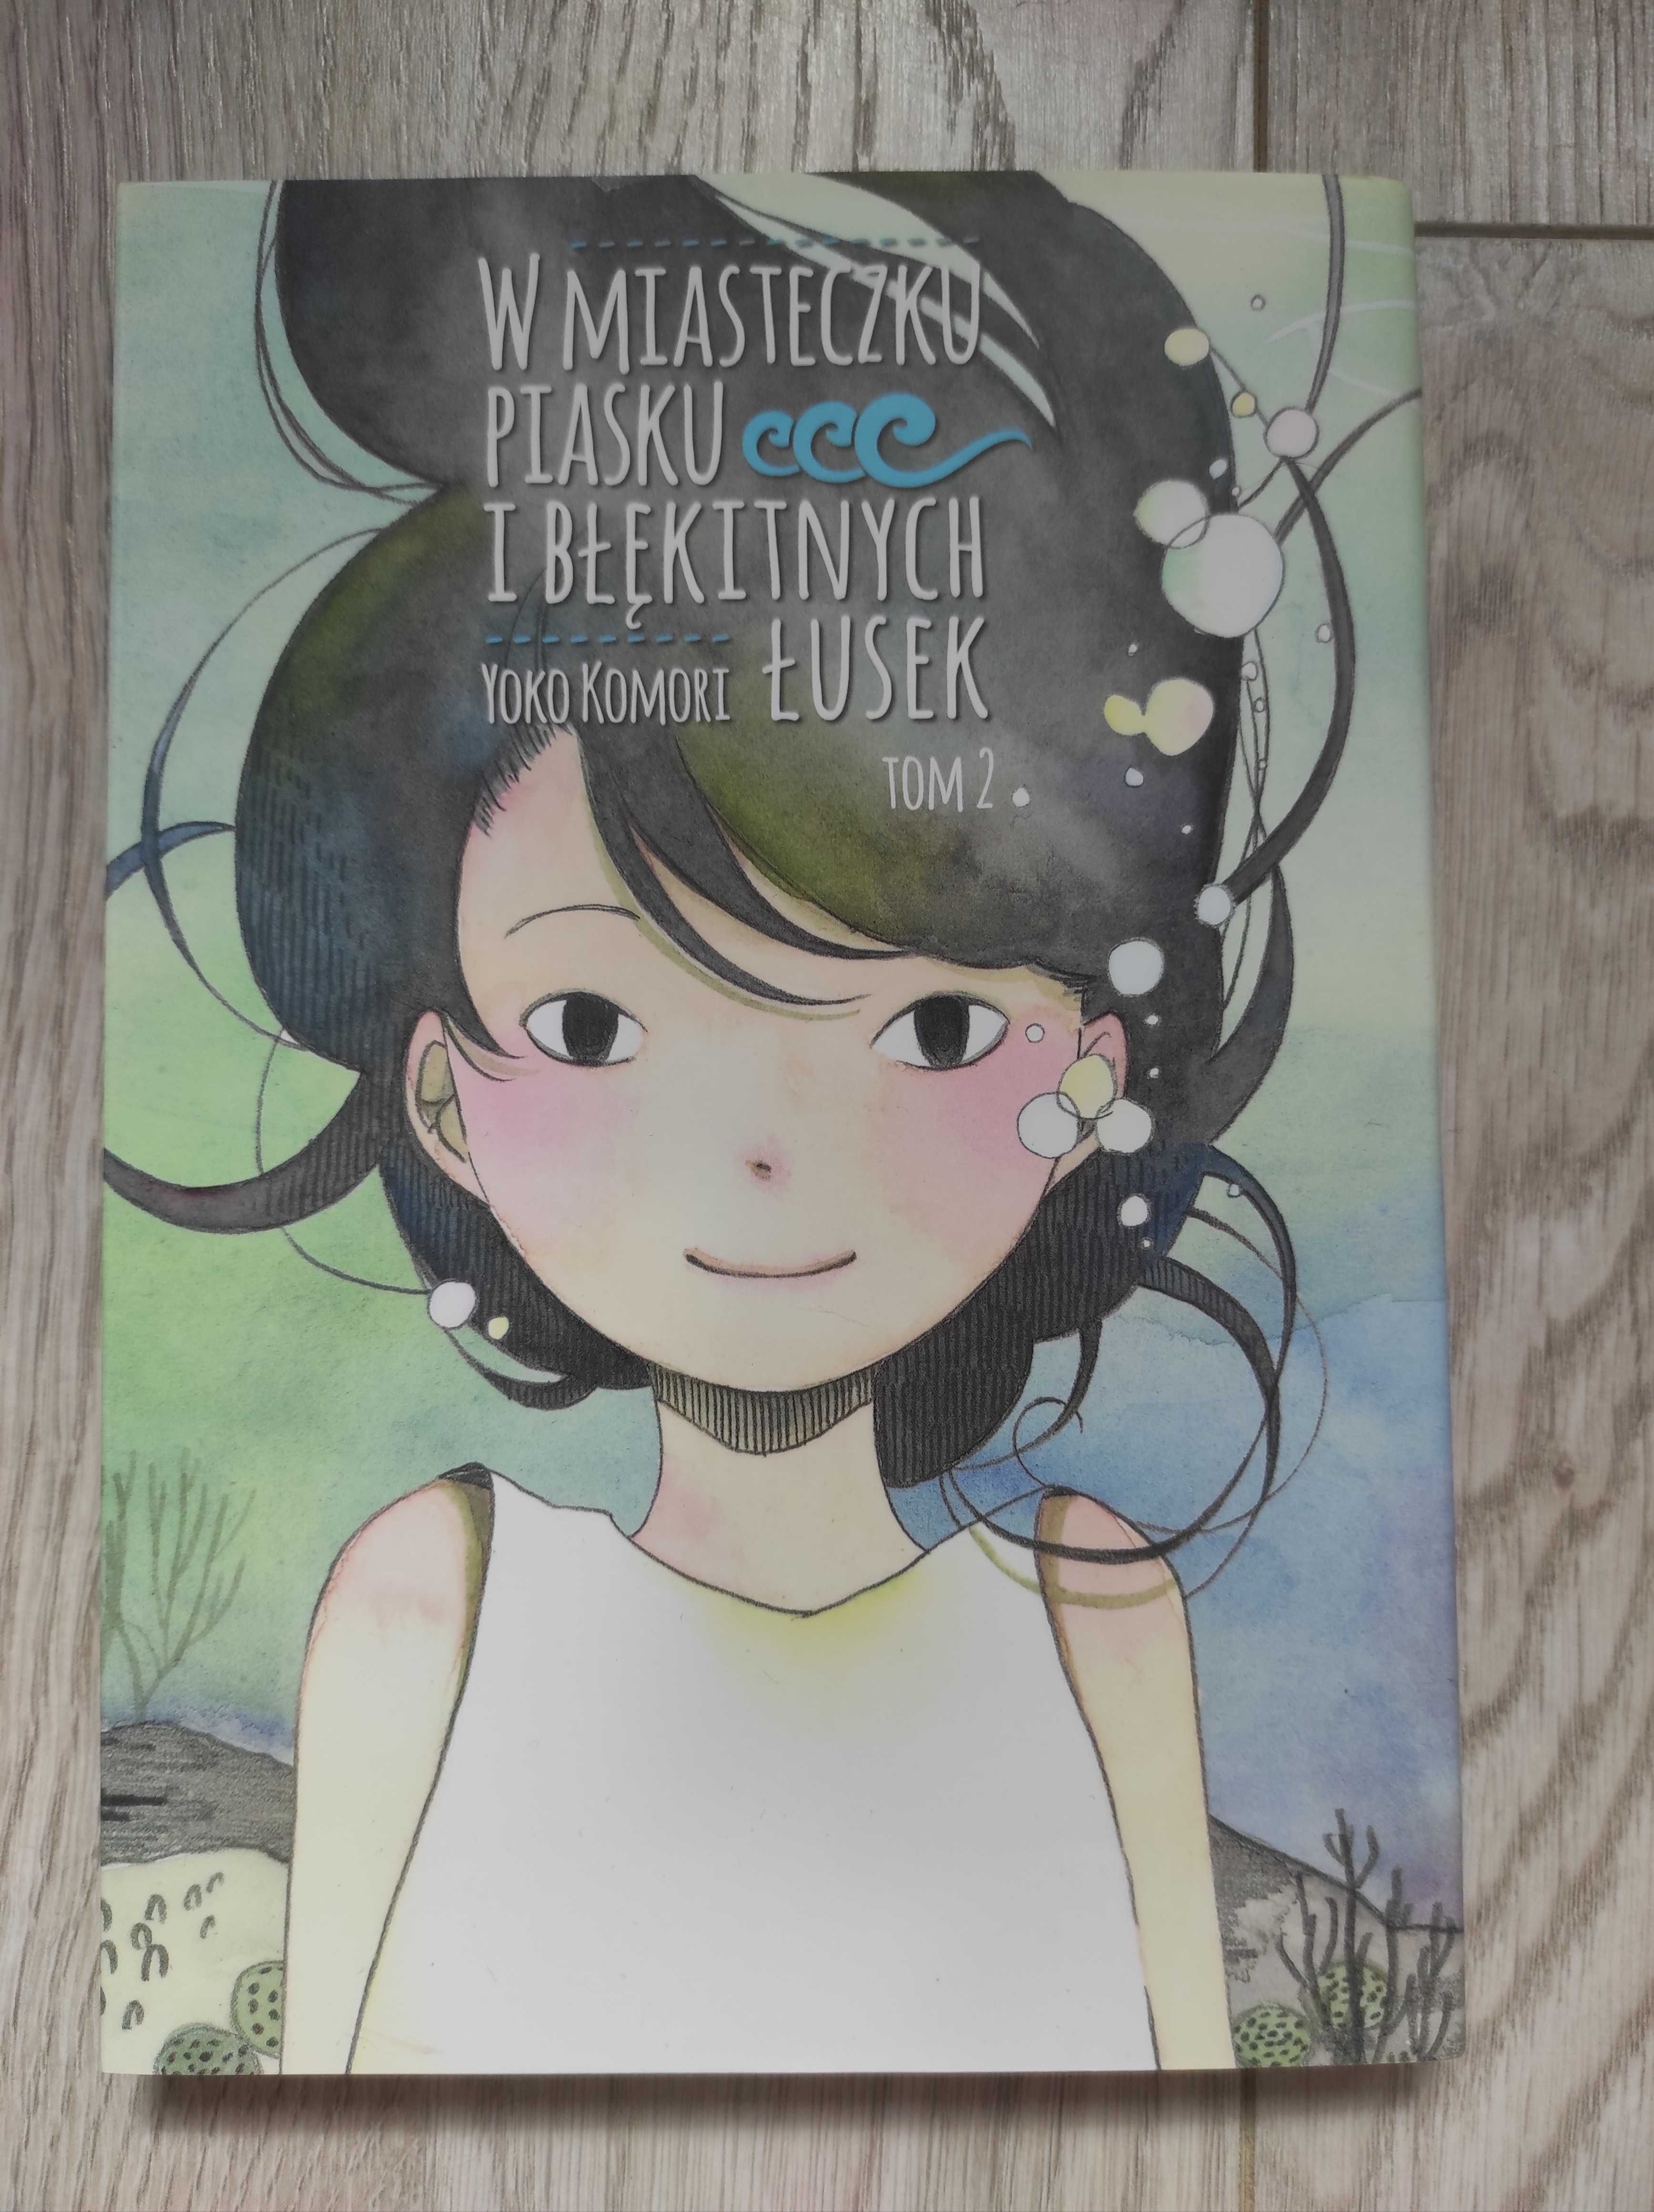 W miasteczku piasku i błękitnych łusek, Yoko Komori, manga komplet 1-2